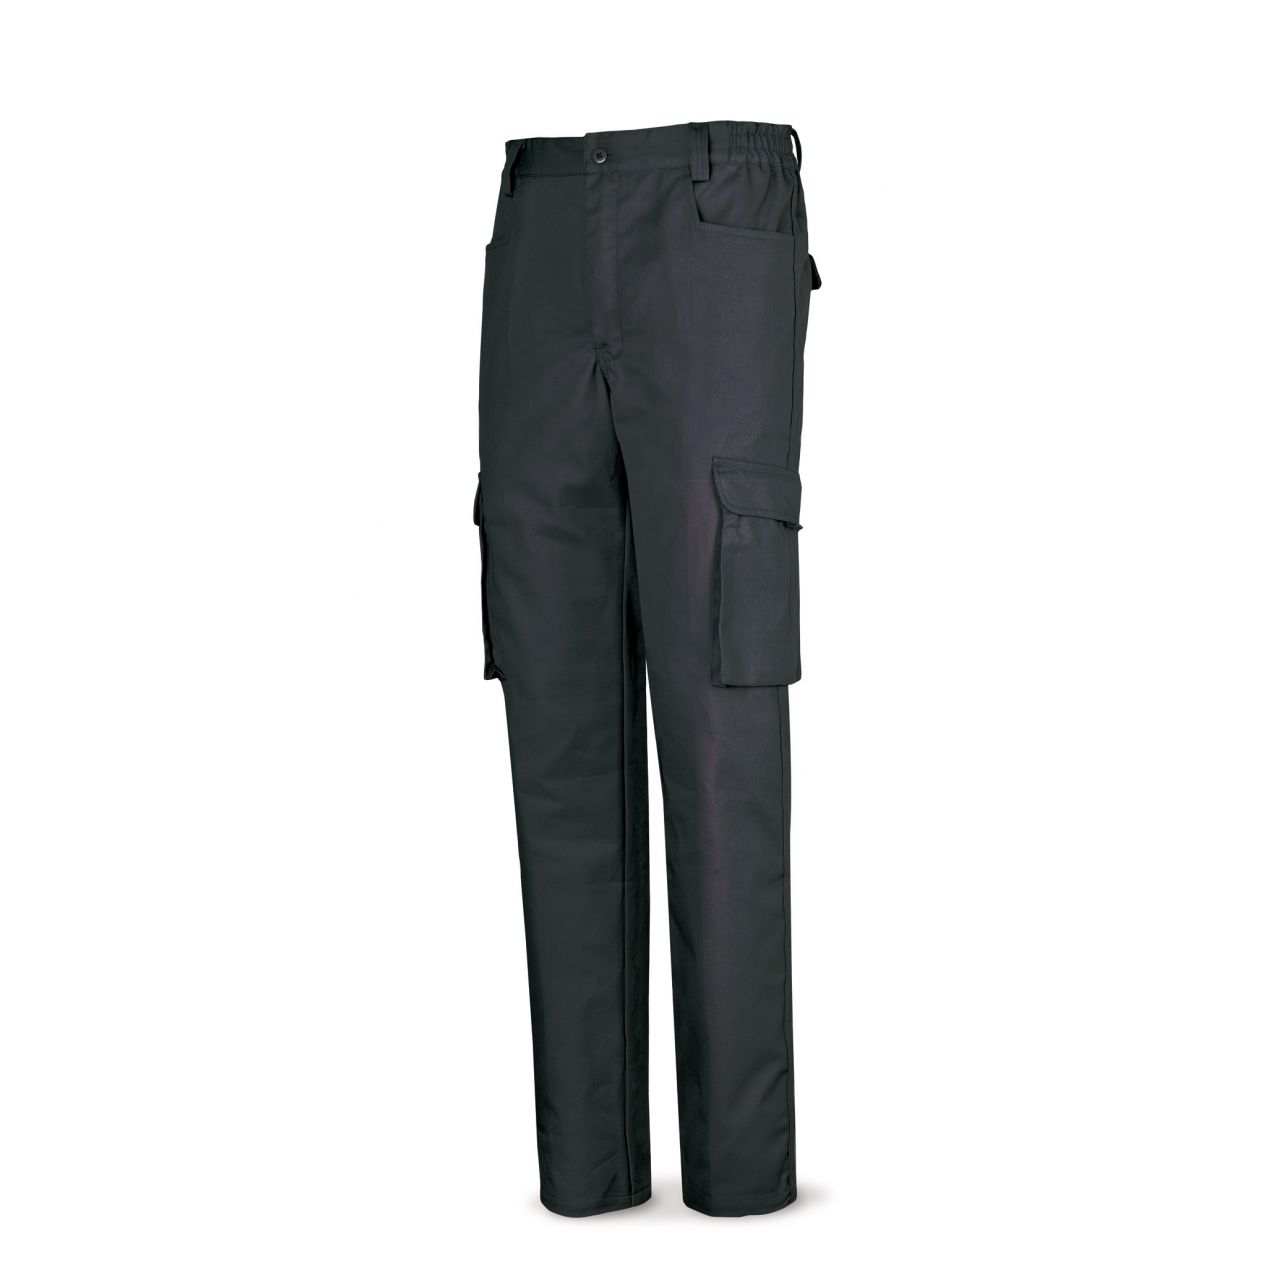 488PTTOPNE Pantalón negro poliester/algodón de 245 g. Multibolsillo